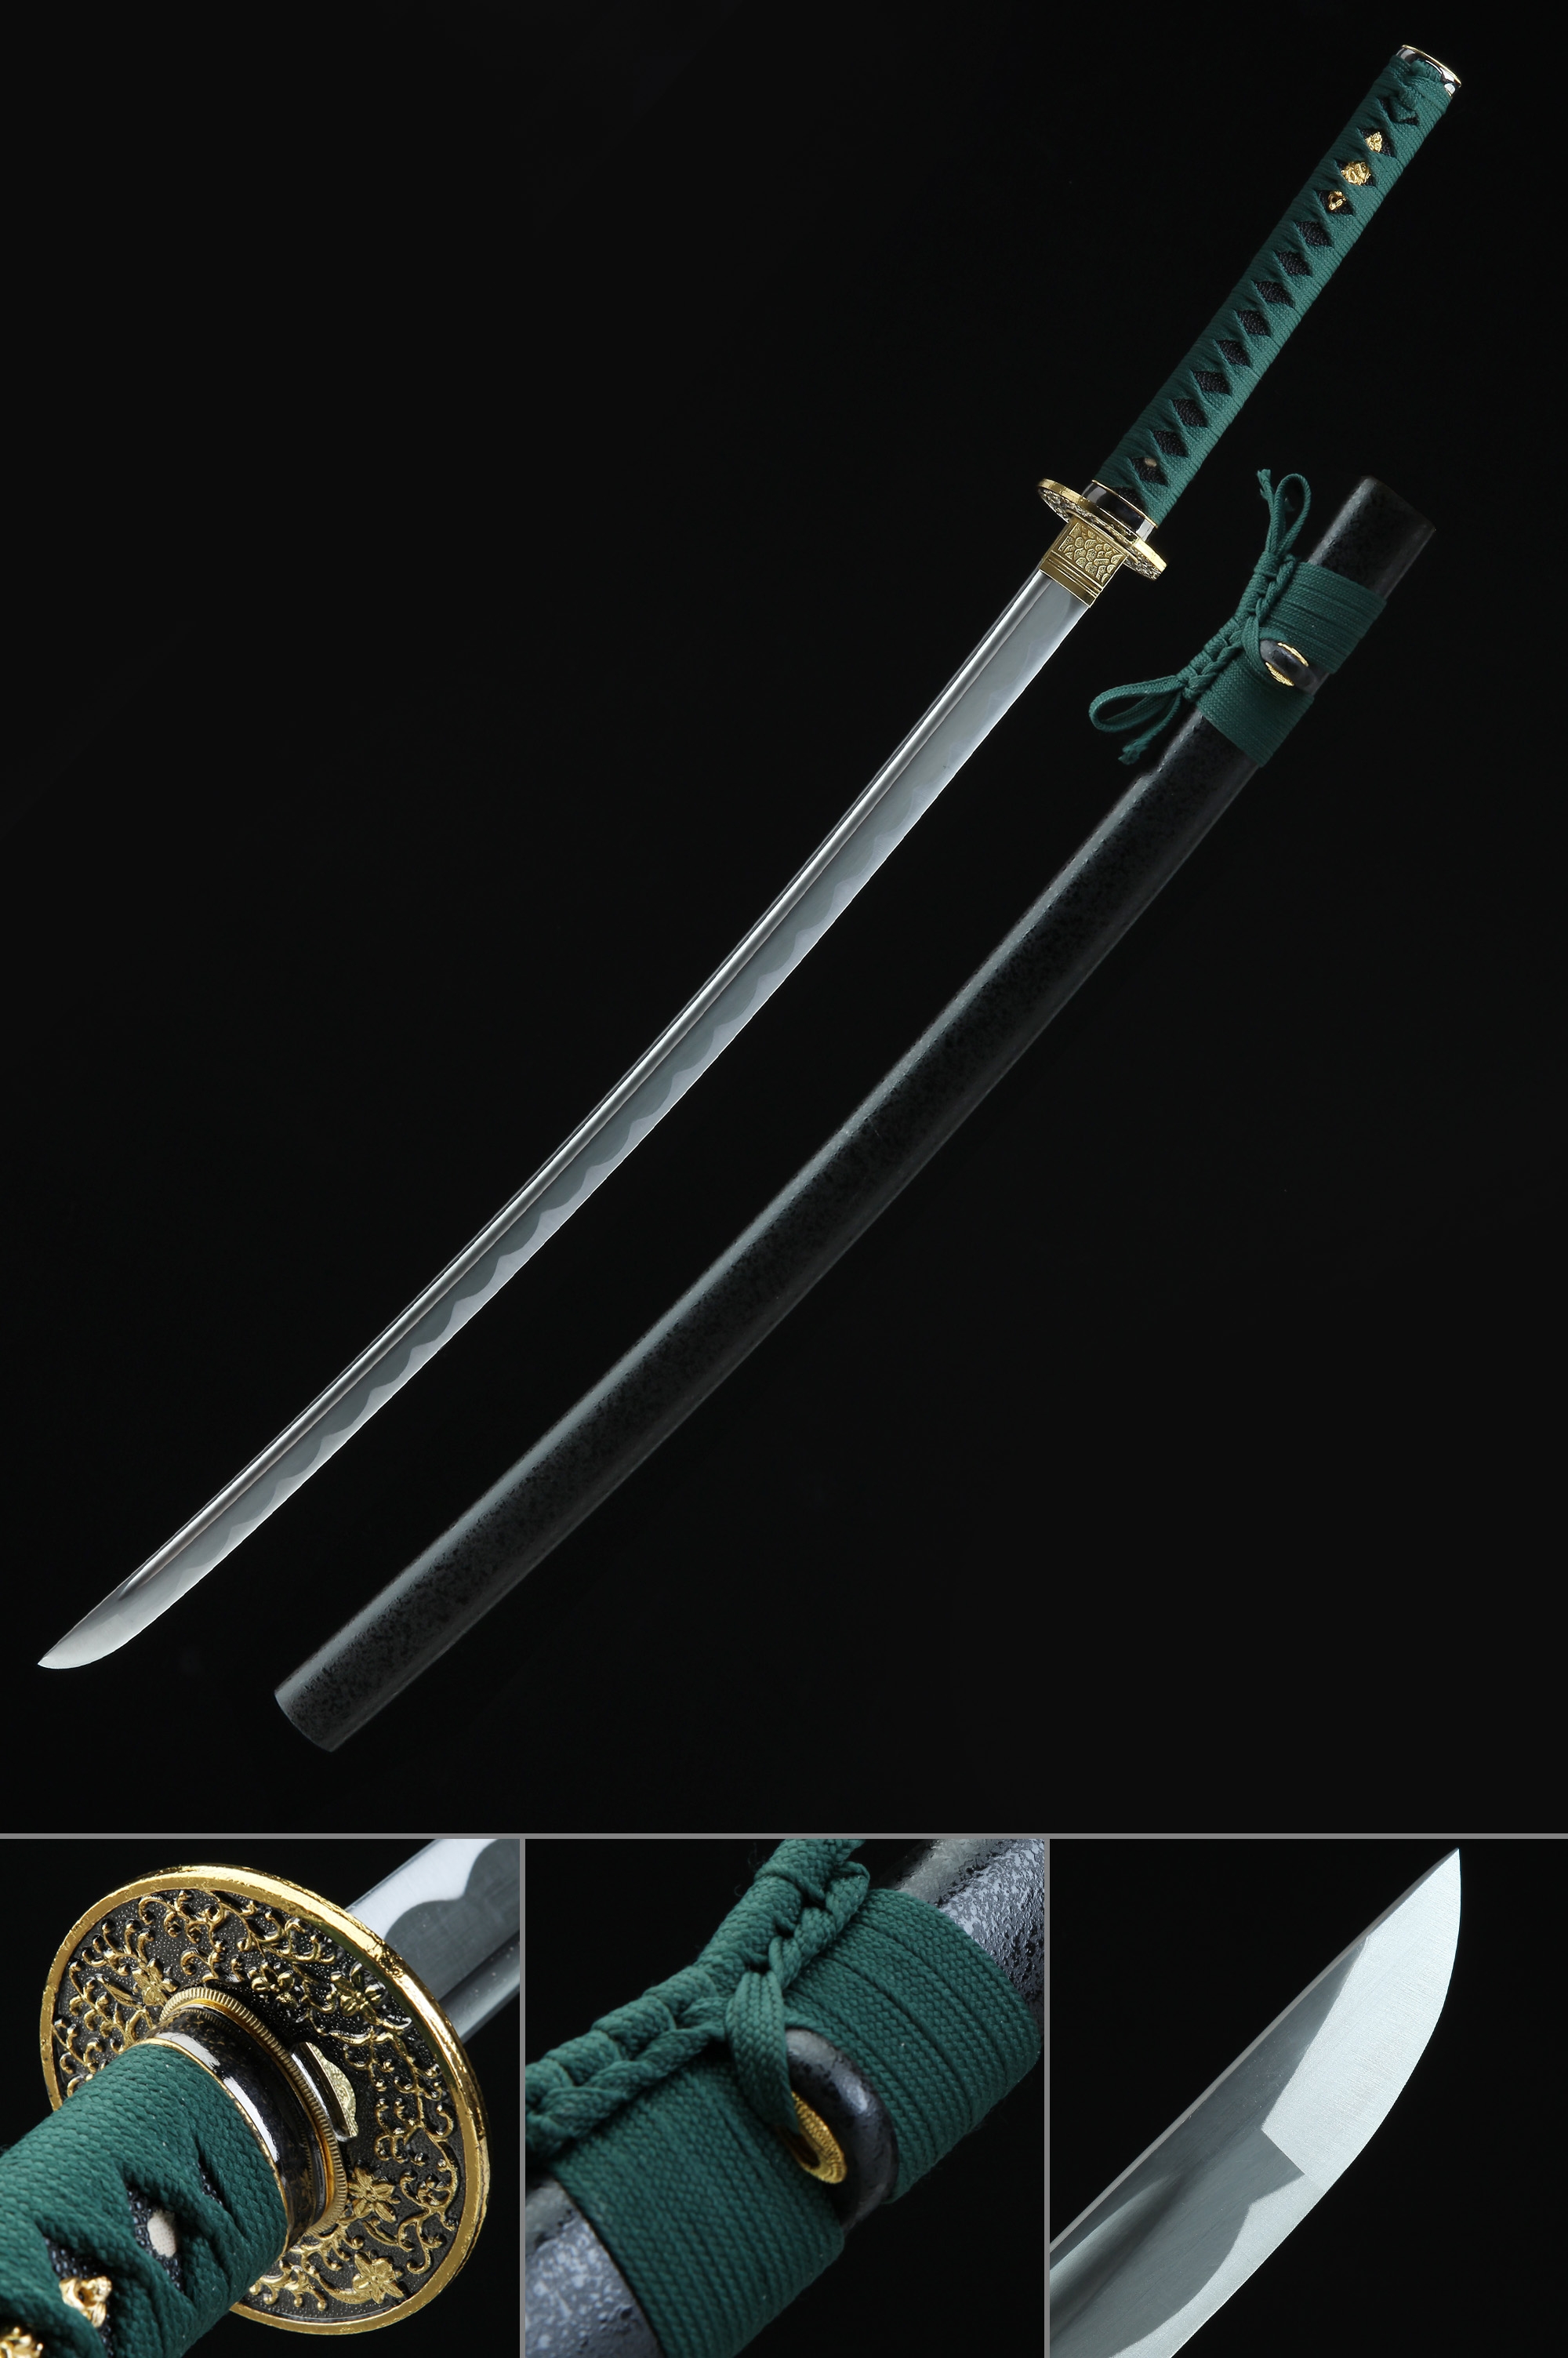 Handmade Japanese Sword 1045 Carbon Steel Full Tang